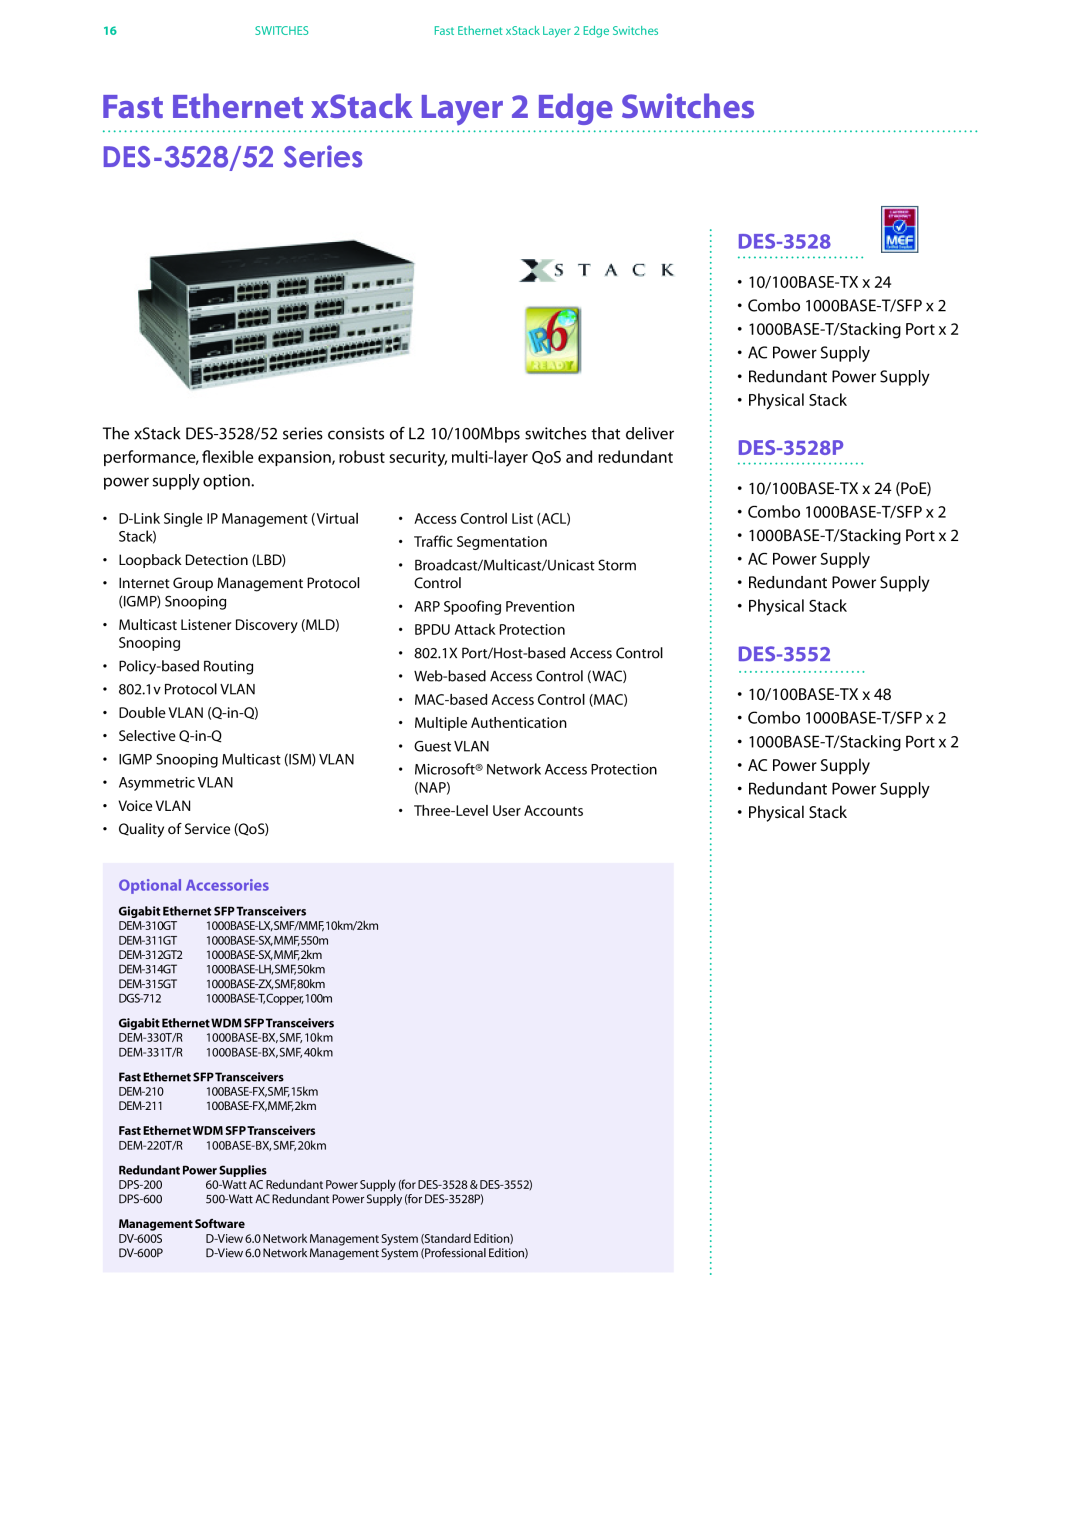 D-Link DES-7200 Fast Ethernet xStack Layer 2 Edge Switches, DES-3528/52 Series, DES-3528P, DES-3552, Optional Accessories 